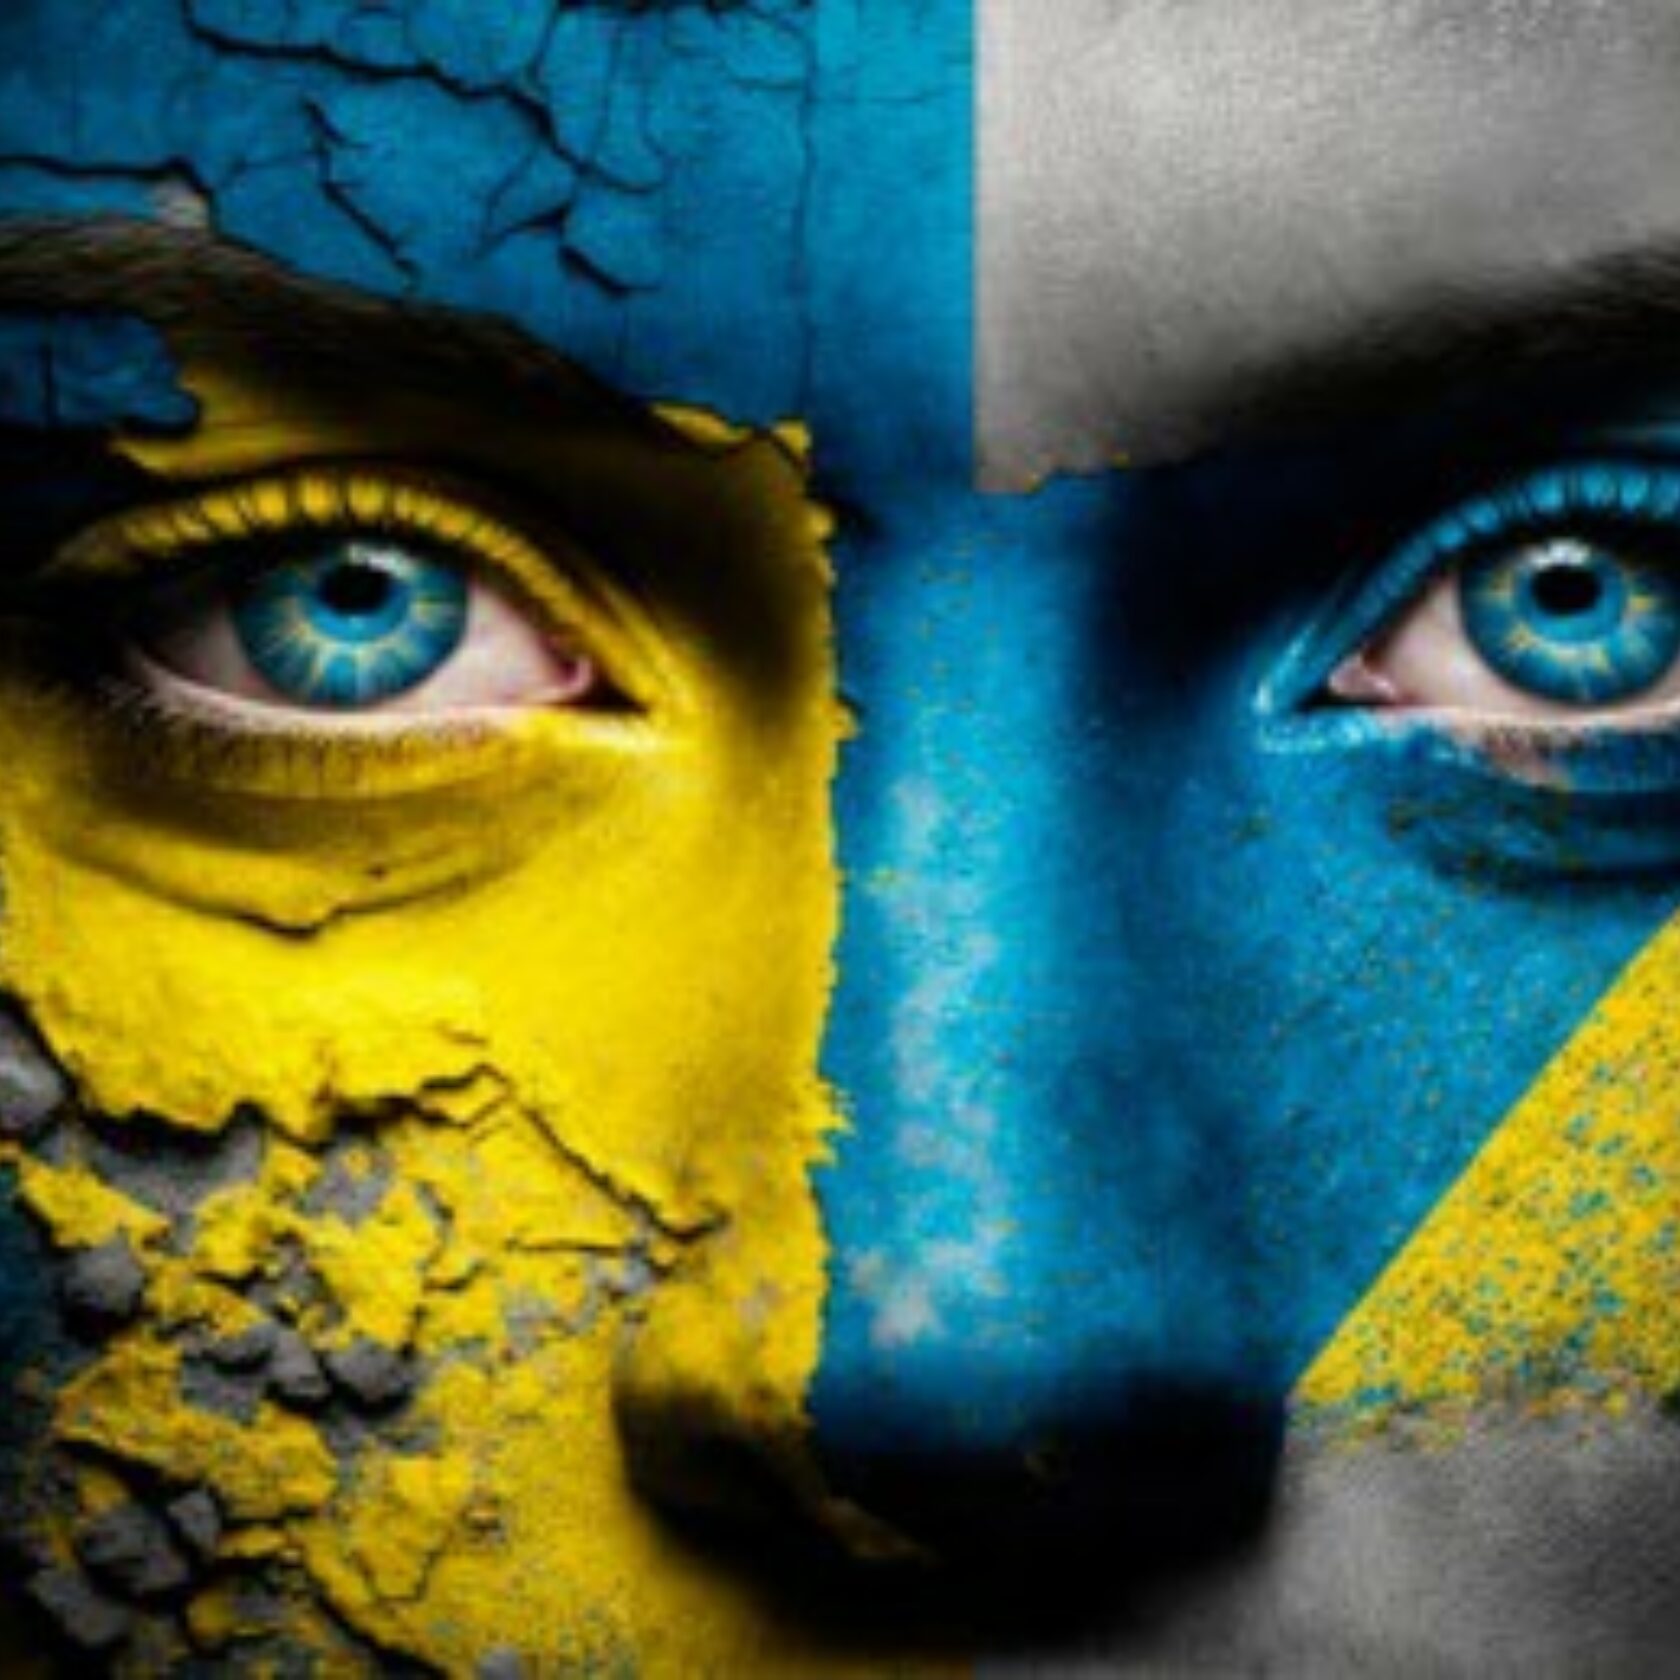 In ukrainischen Nationalfarben bemaltes Gesicht von dem die Farbe bröckelt